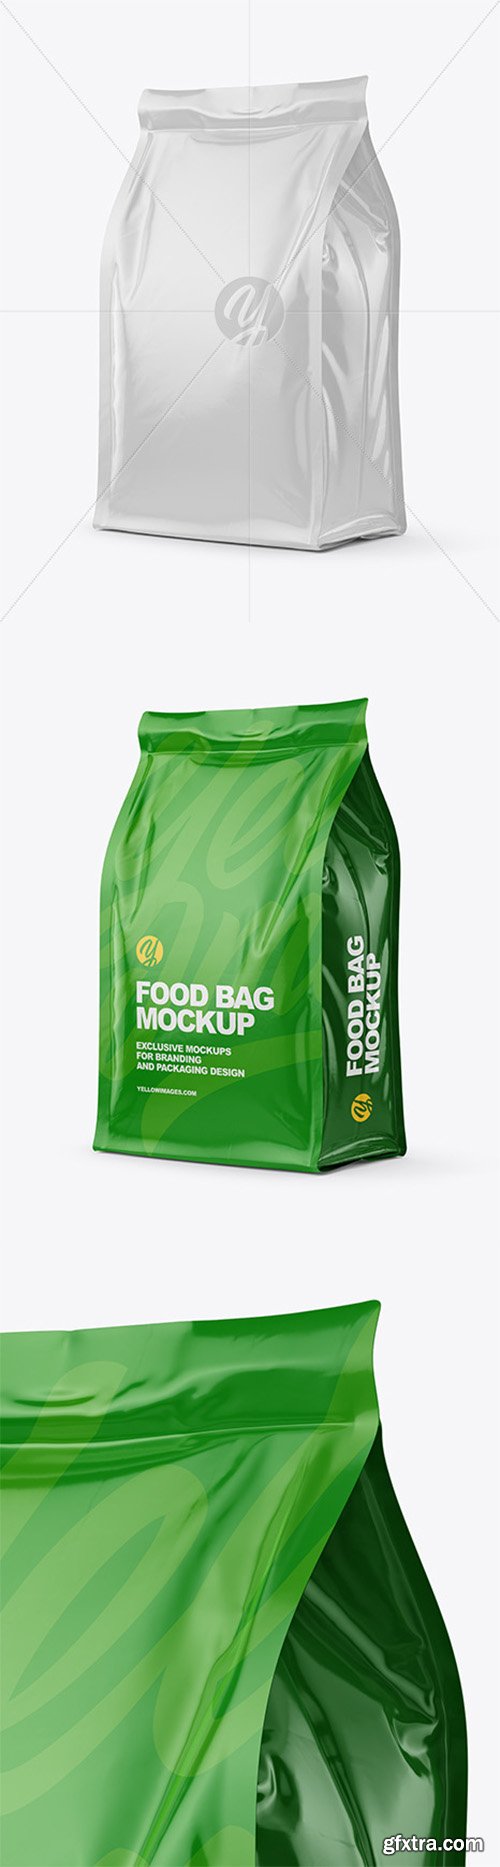 Glossy Food Bag Mockup 60537